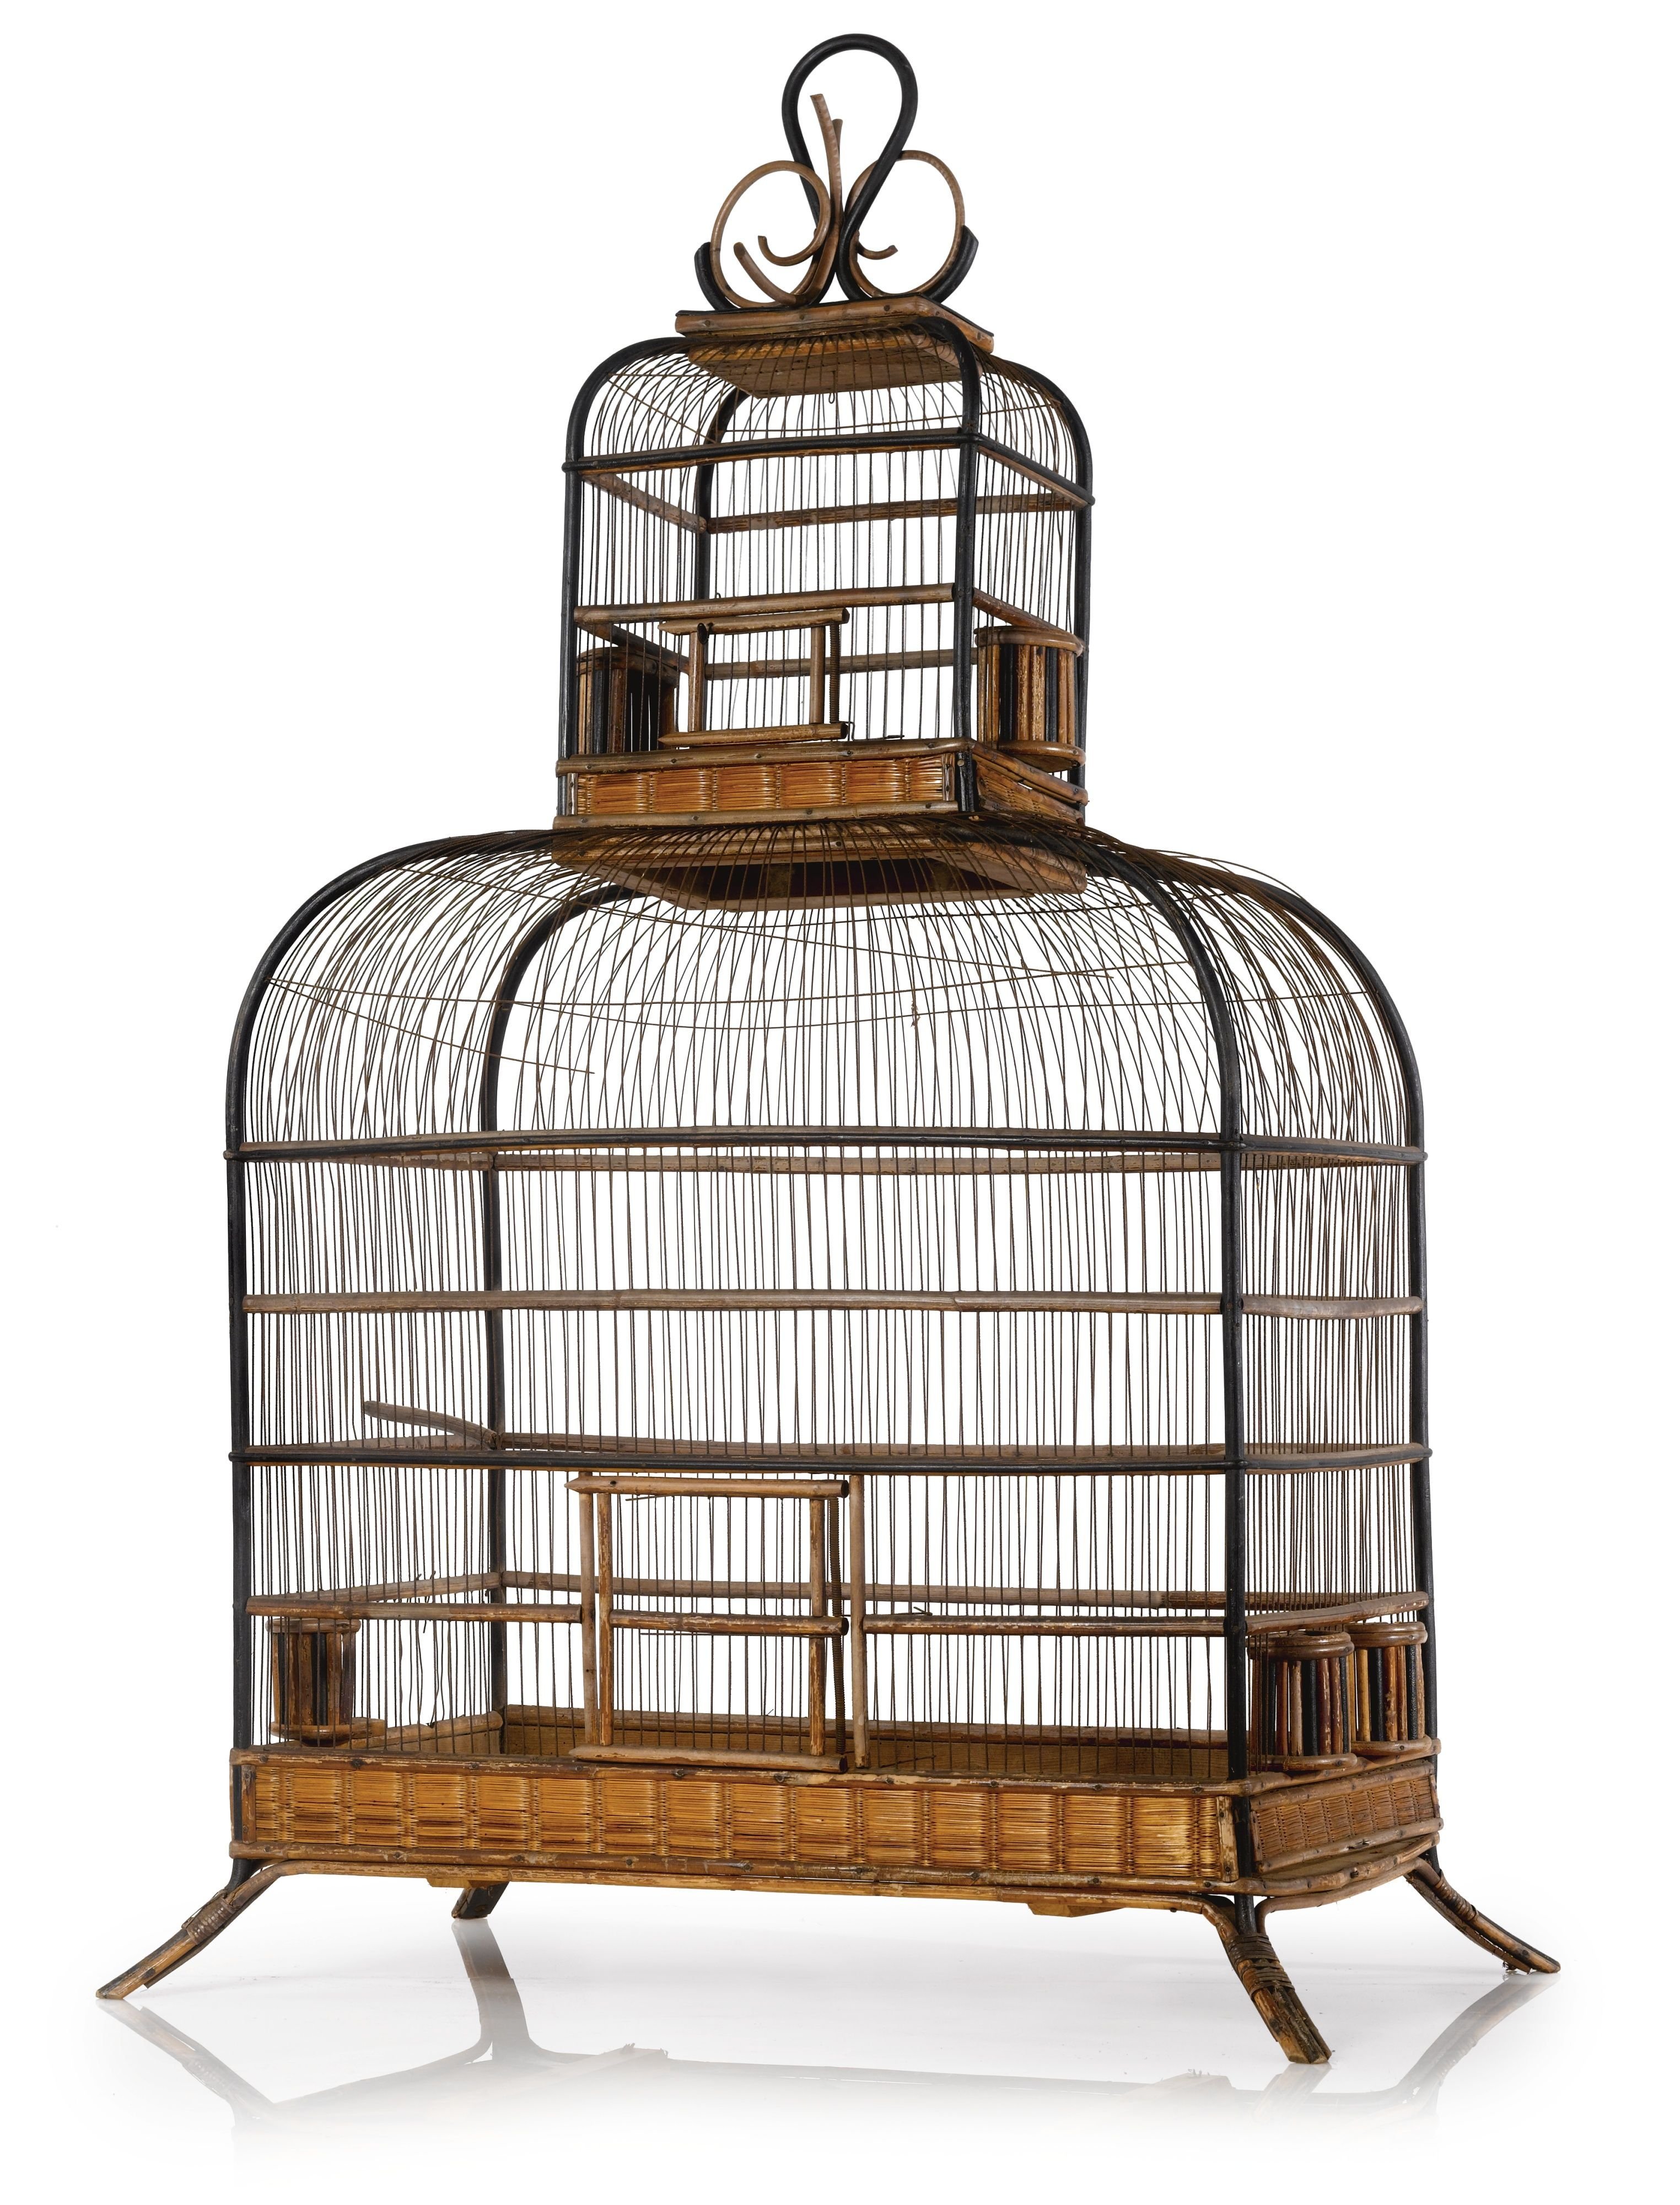 Самая древняя клетка. «Птичья клетка» («la Cage d’oiseaux»), 1750г. Старинная клетка для птиц. Красивая клетка.